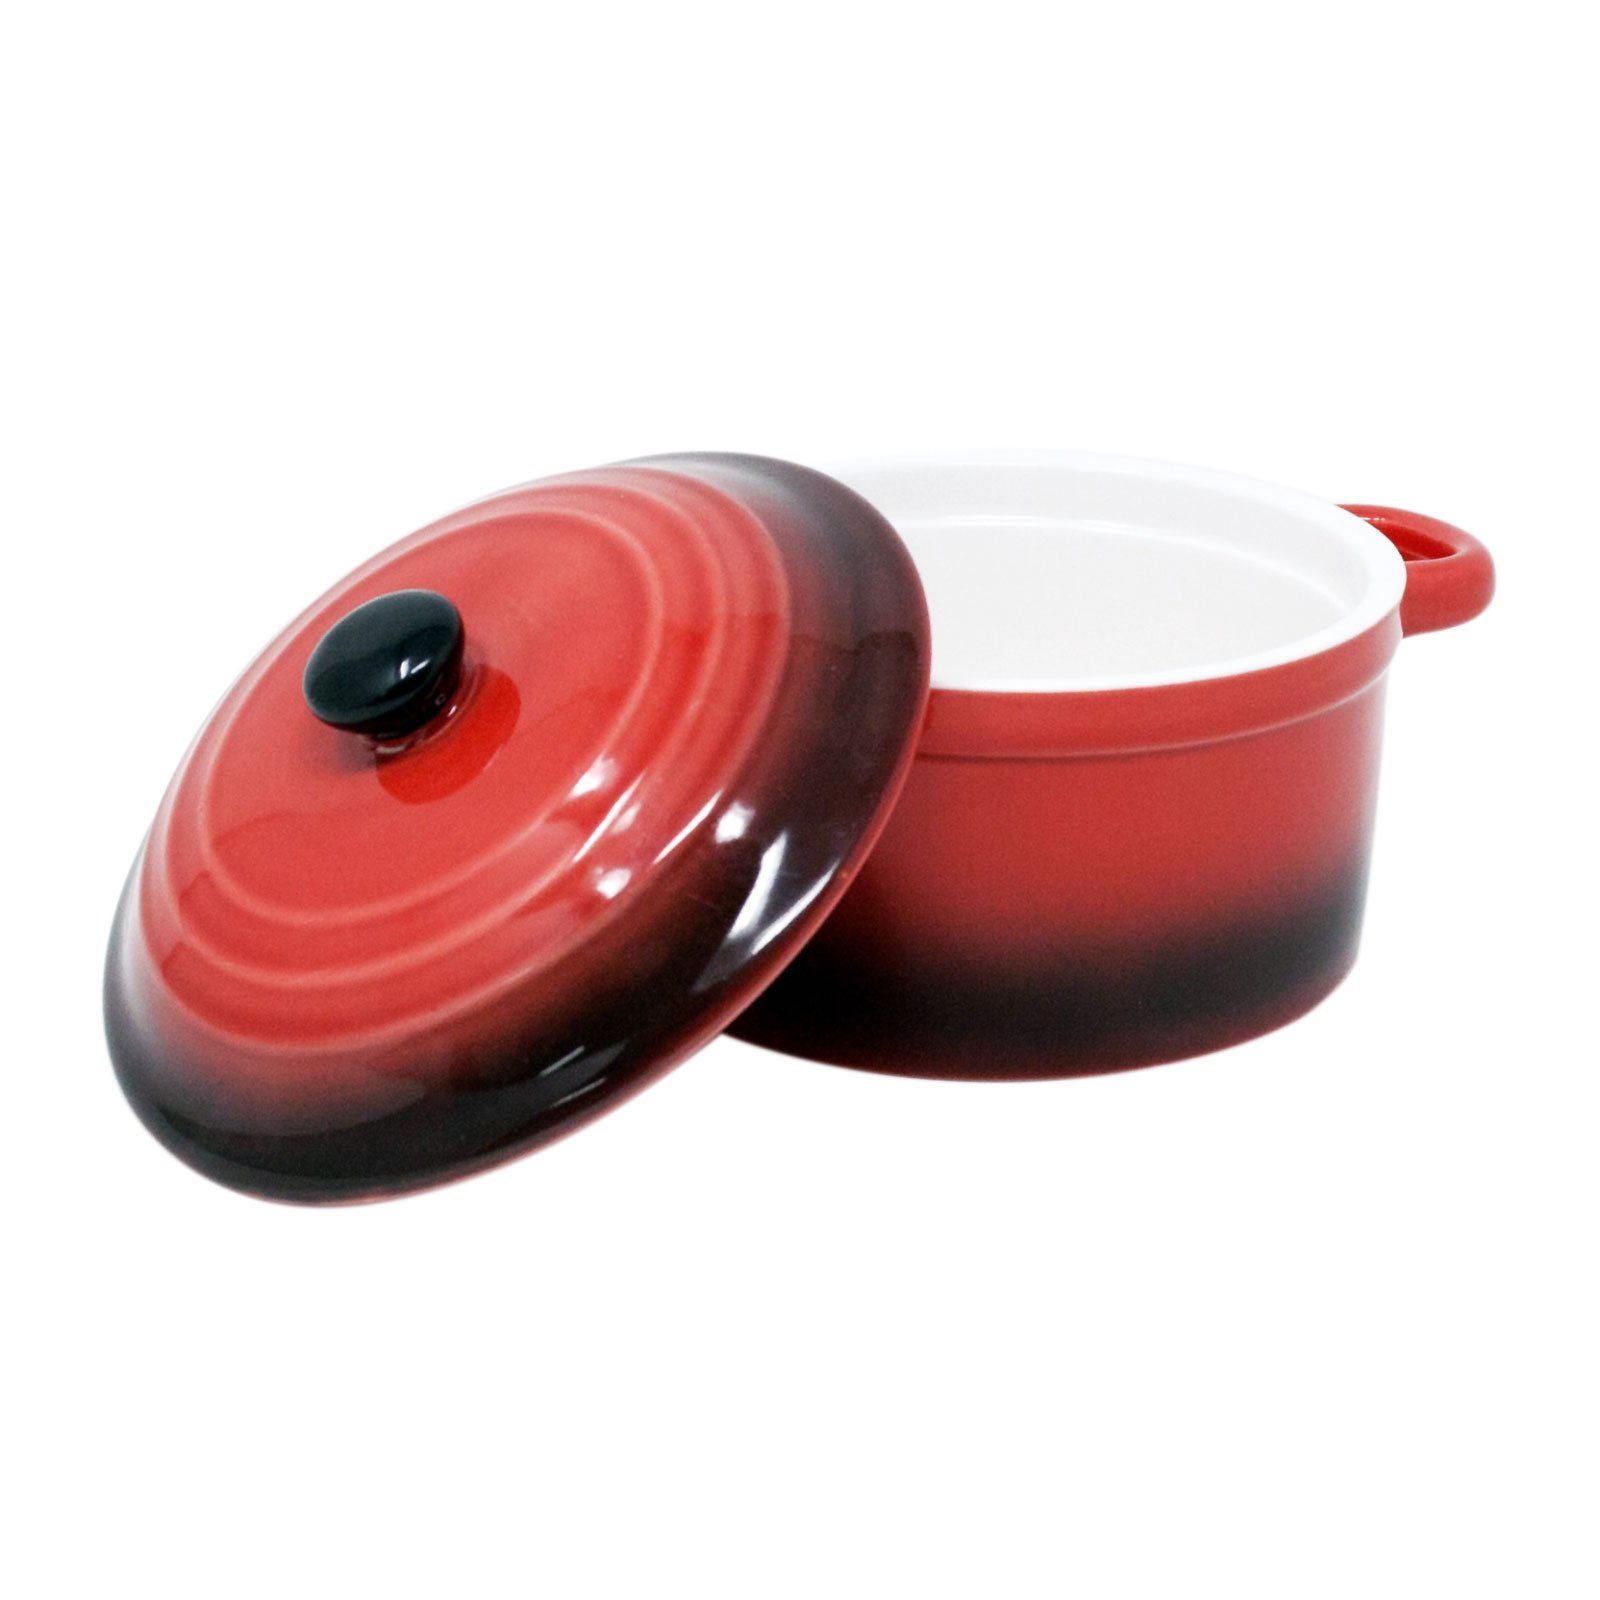 ToCi : Rot 10 Ø Deckel Auflaufschale Auflaufform Keramik aus mit Parent cm